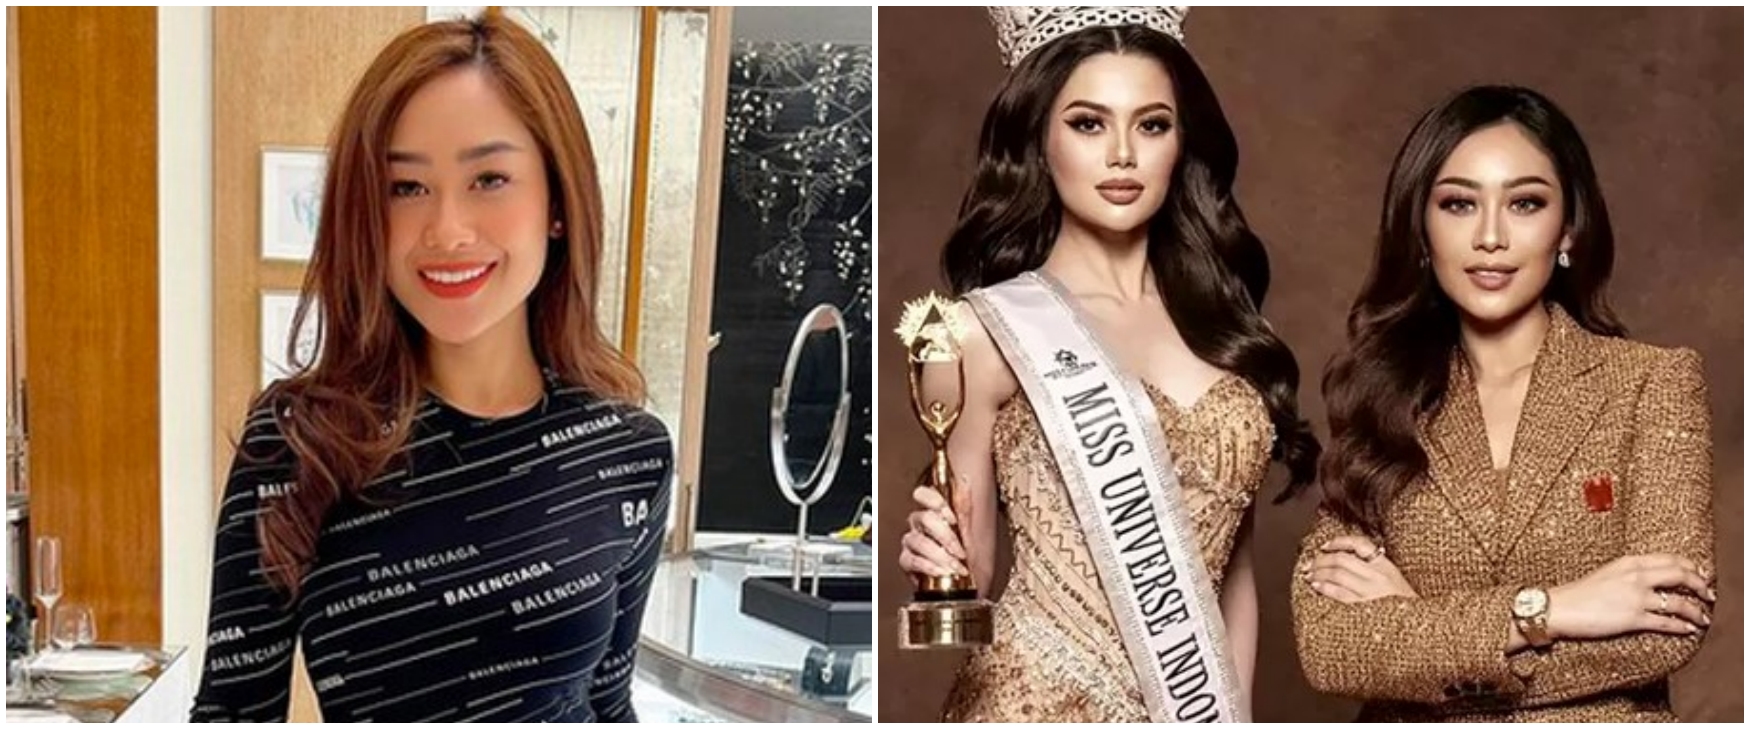 Lisensi Miss Universe Indonesia dicabut usai terkuak dugaan pelecehan, Poppy Capella buka suara